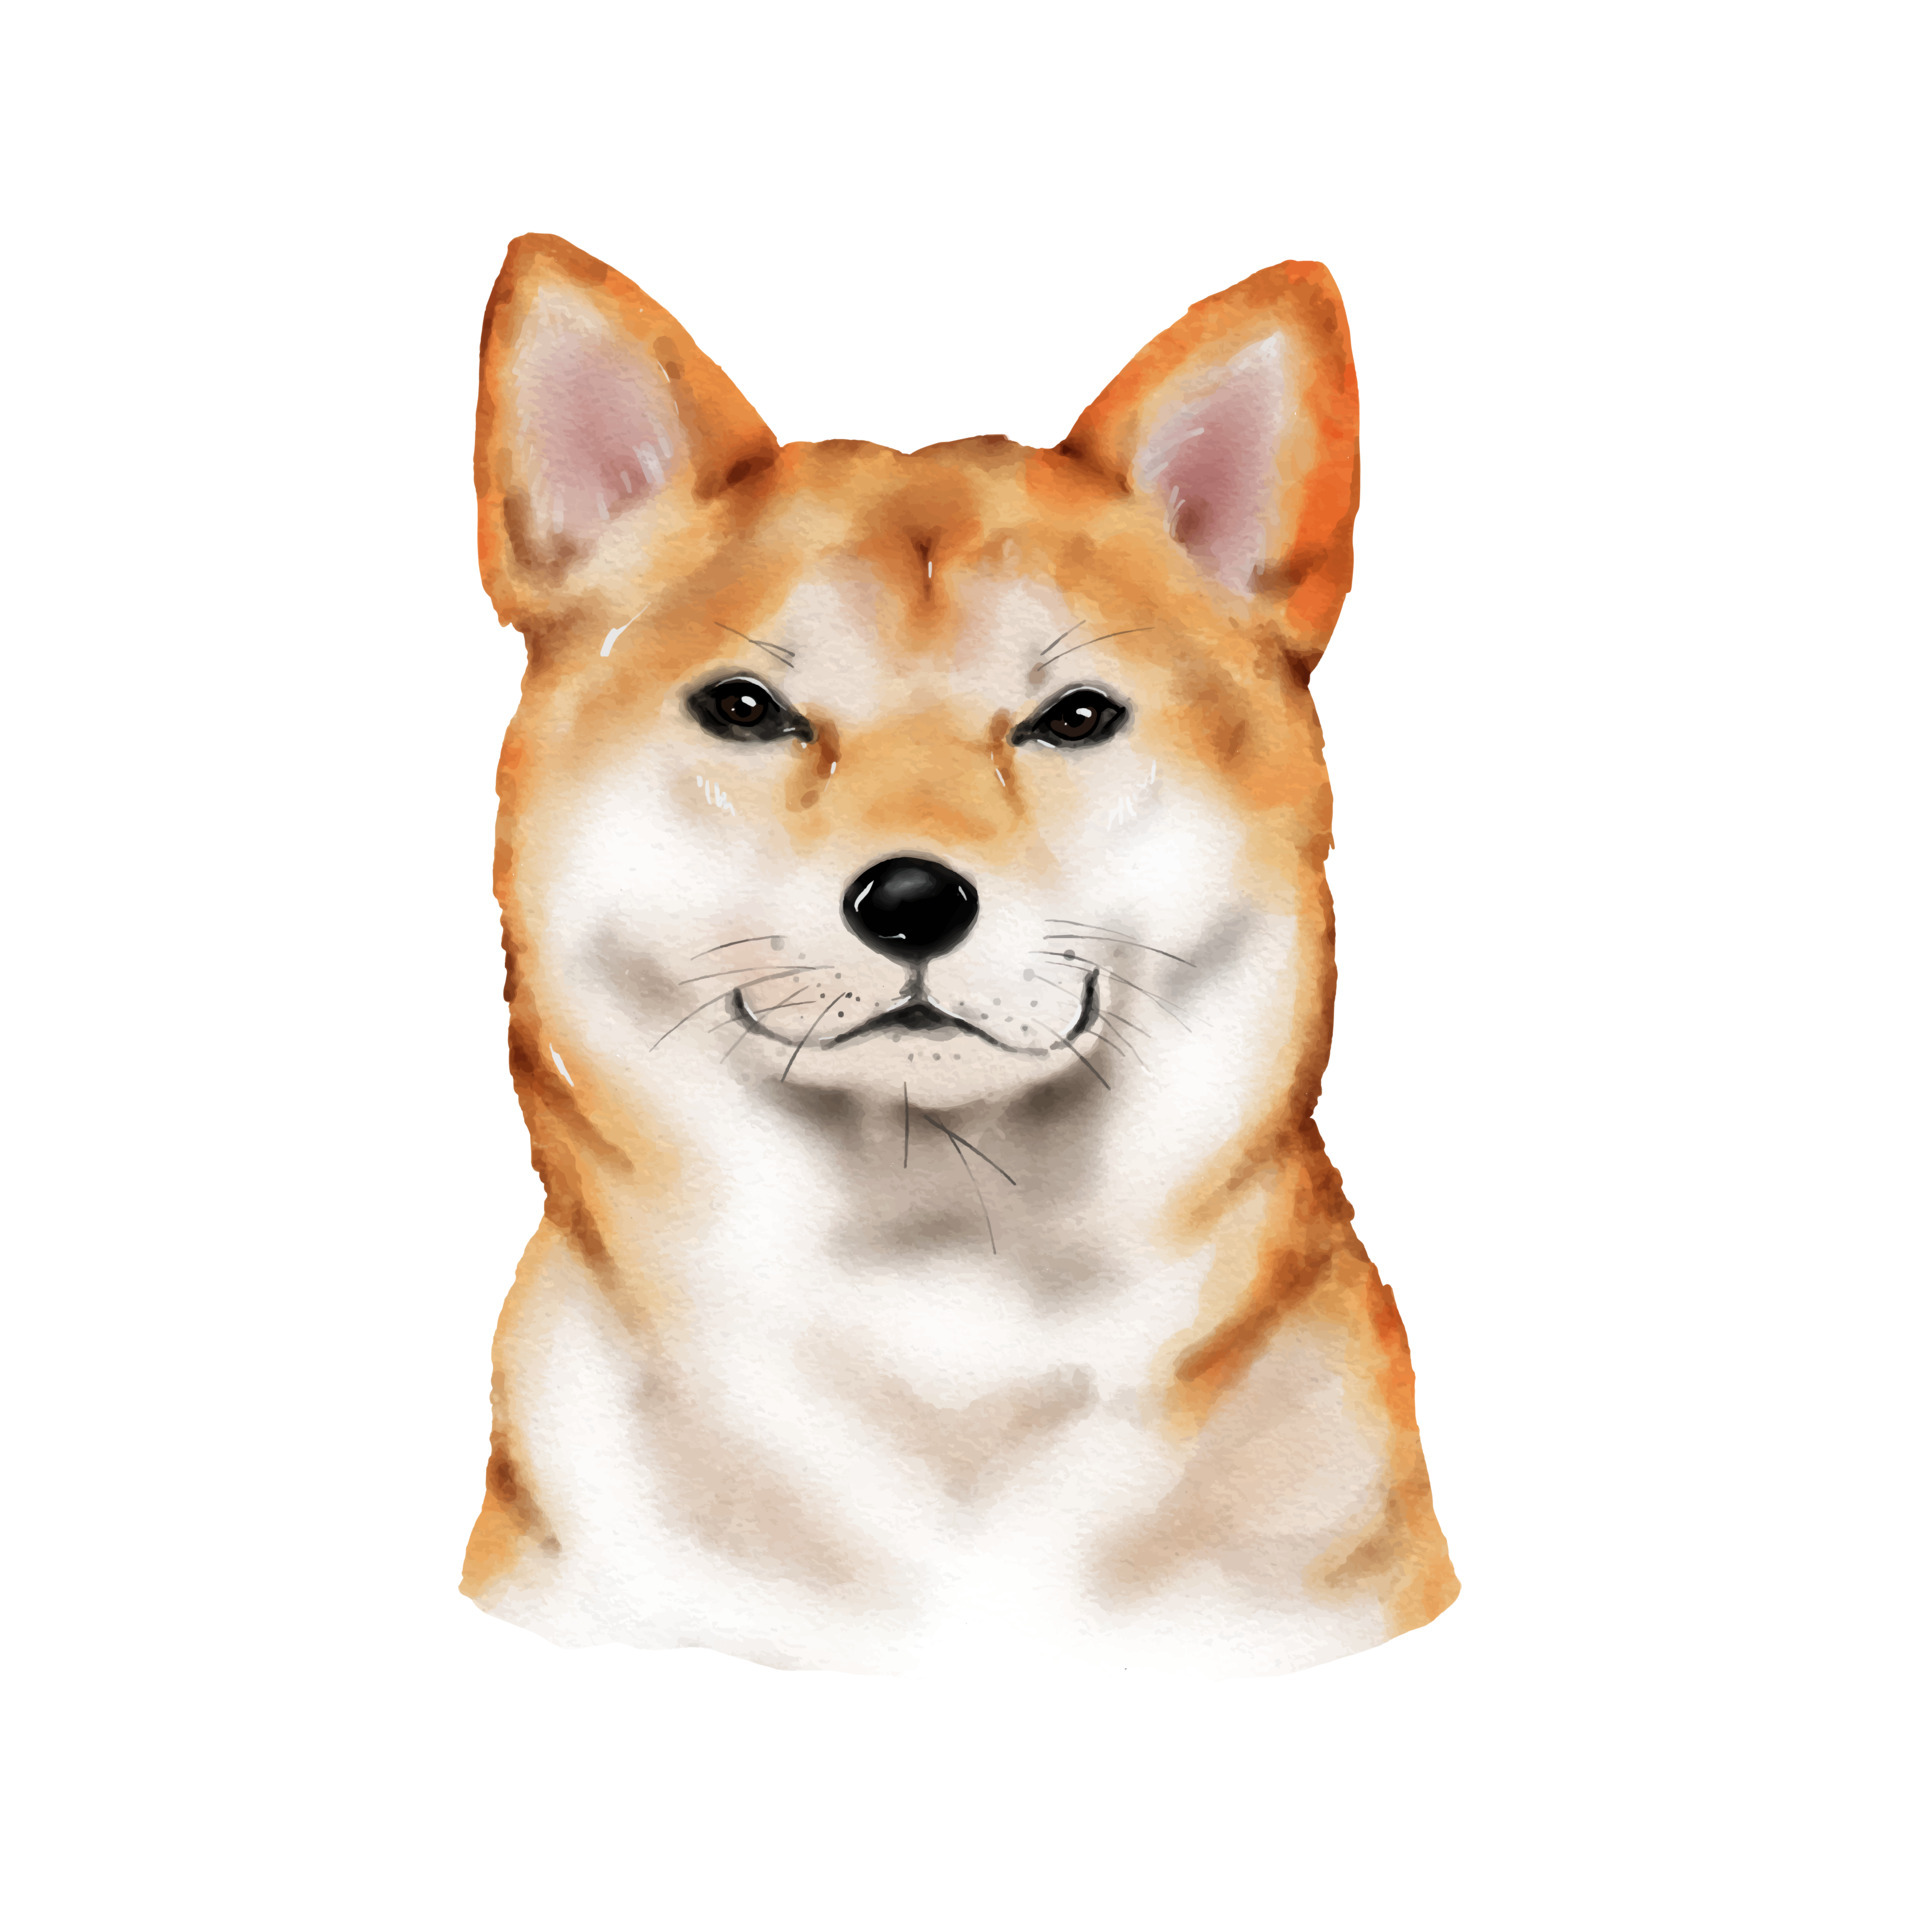 Shiba Inu: Shiba Inu là giống chó lý tưởng cho các gia đình và những người yêu thích chó. Hãy xem hình ảnh của Shiba Inu này để cảm nhận độ đáng yêu của chúng!